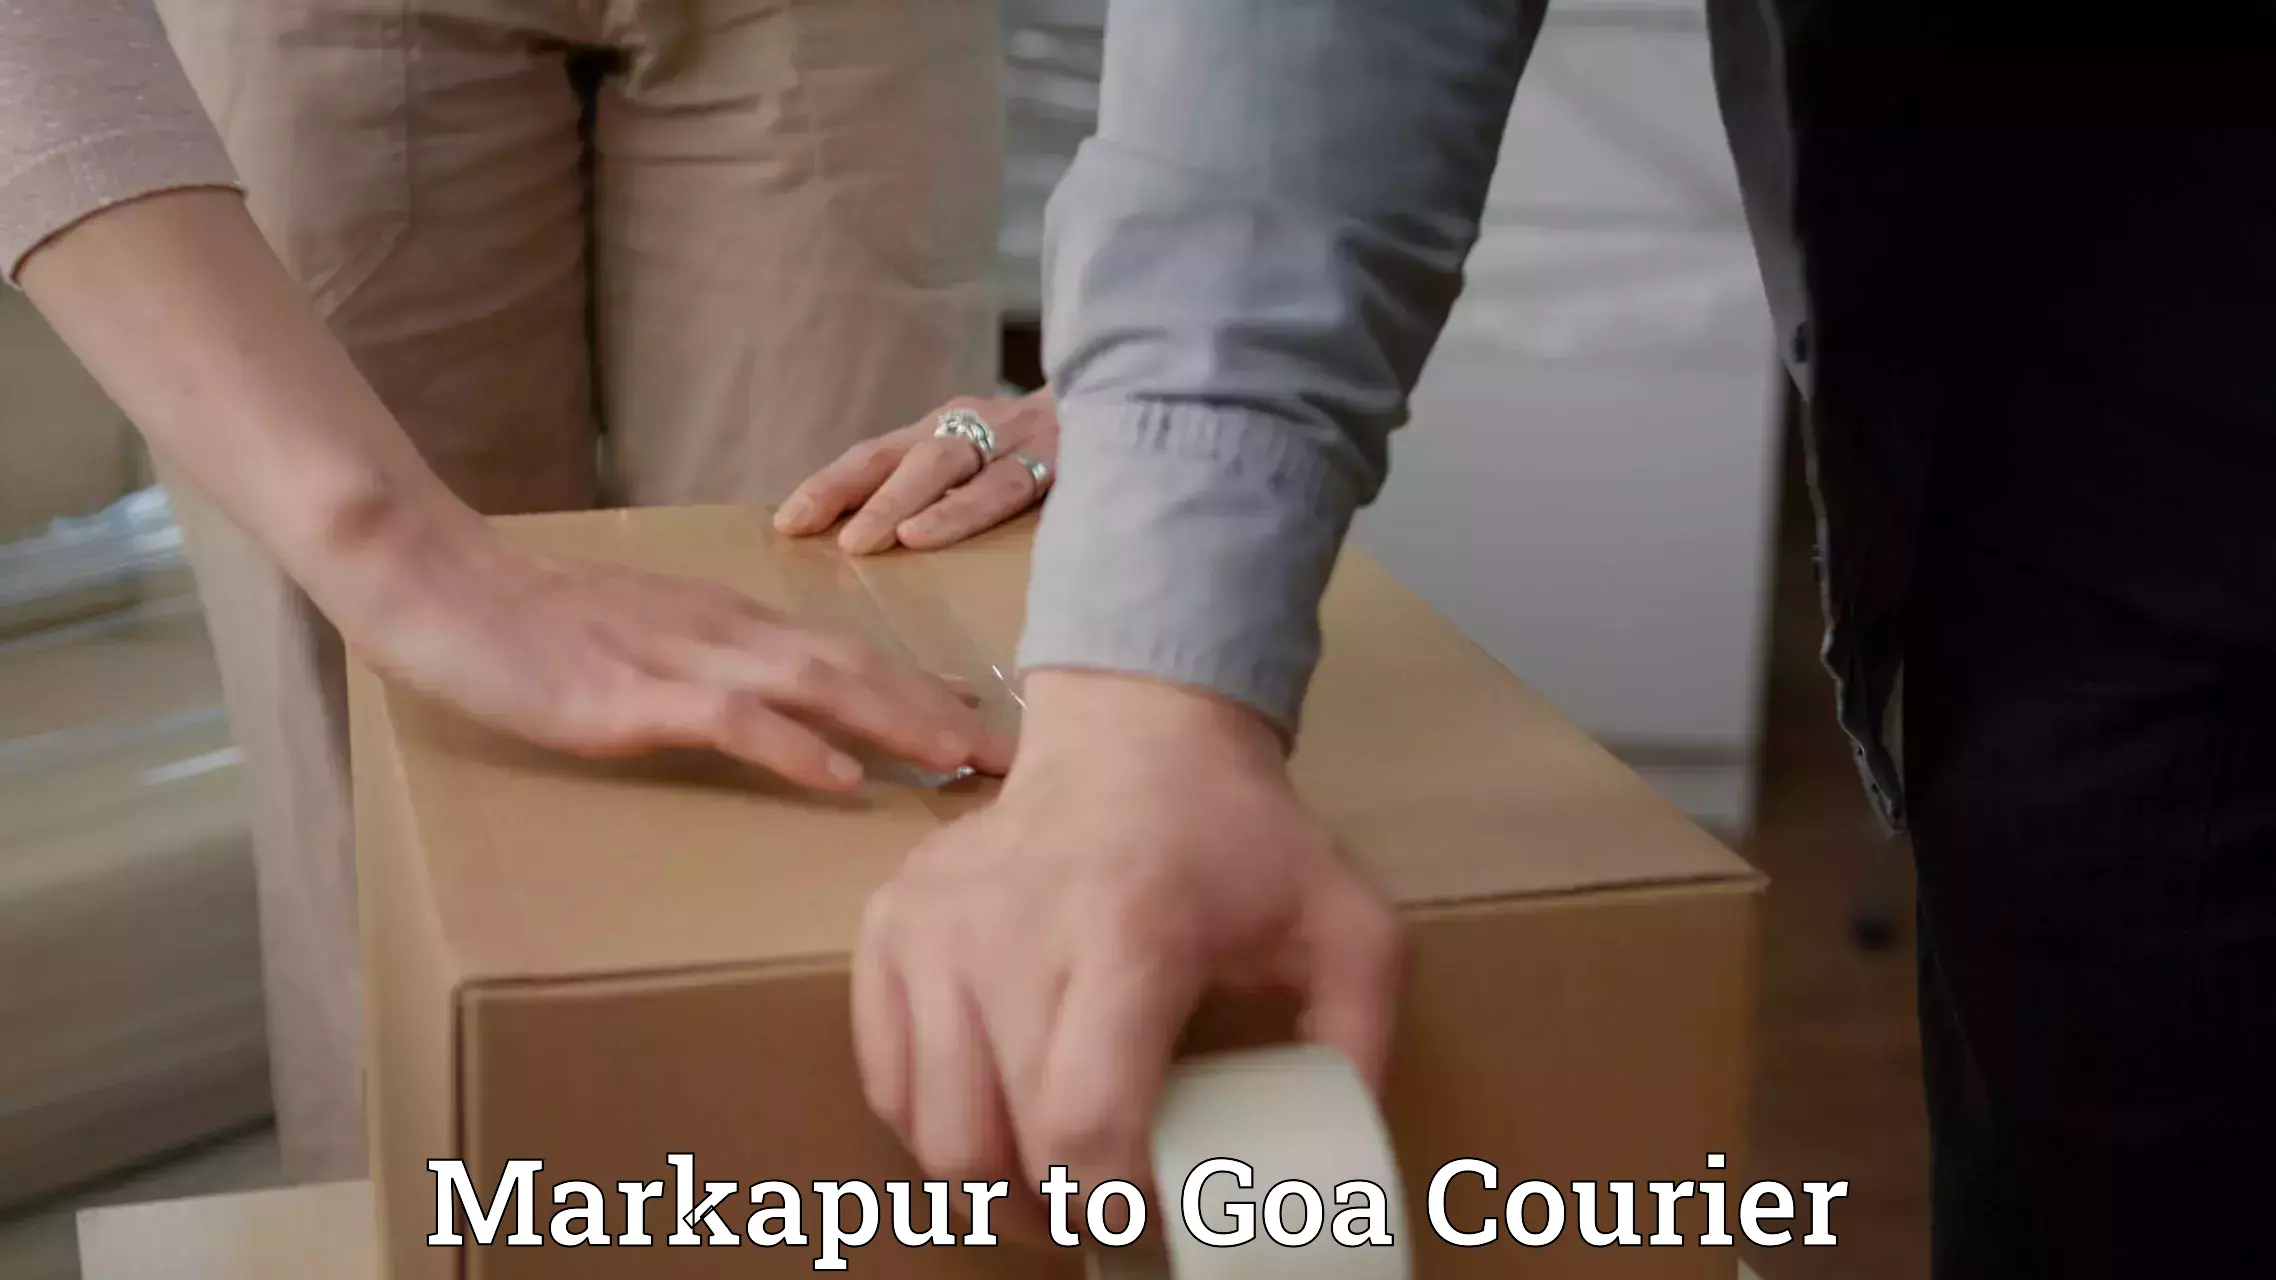 Global courier networks Markapur to Vasco da Gama